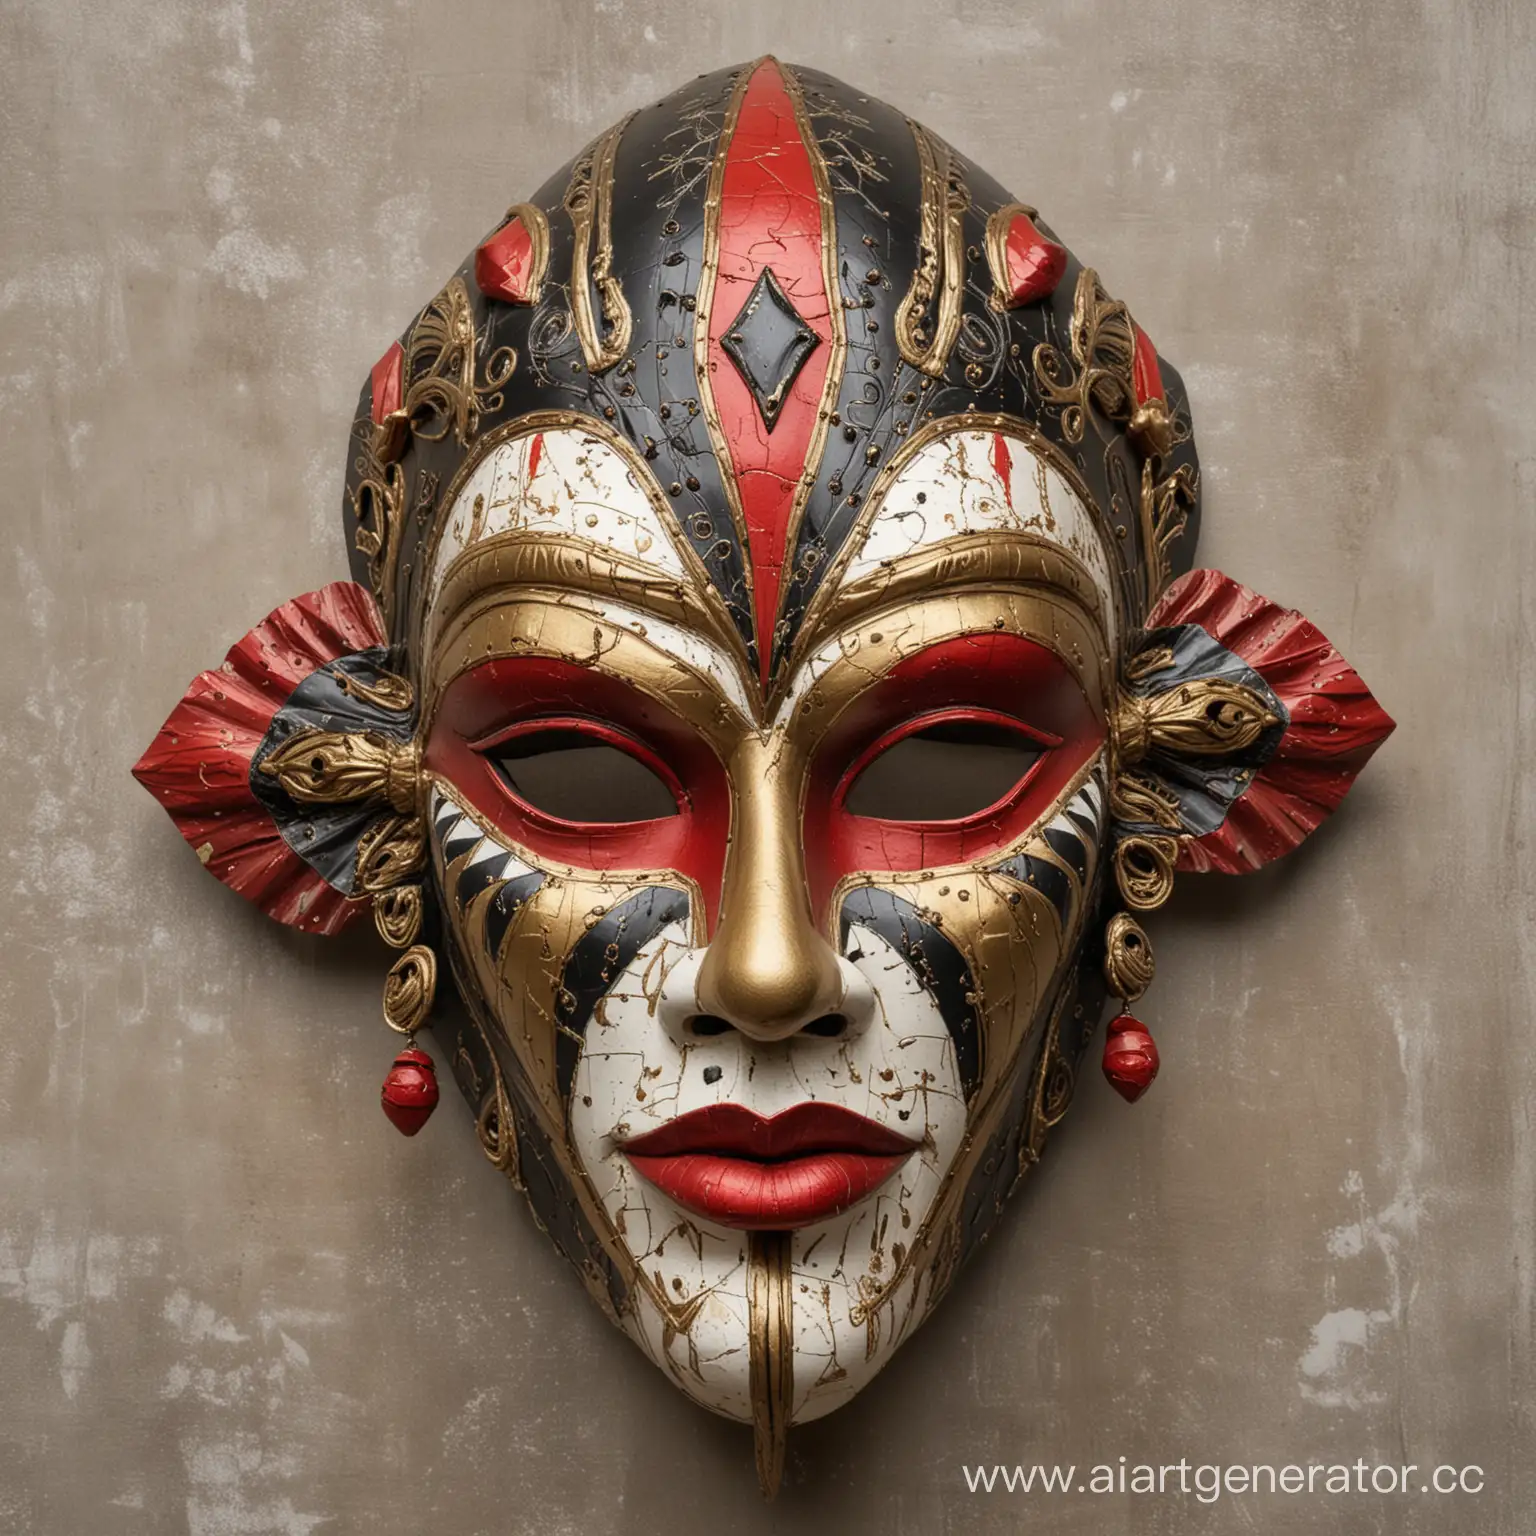 Интерьерная декоративная маска Арлекин, аутентичная, символичная, симметричная, сложно выполненная, со множеством деталей и фактур. Выполнена в черном, золотом, красном, белом цвете.